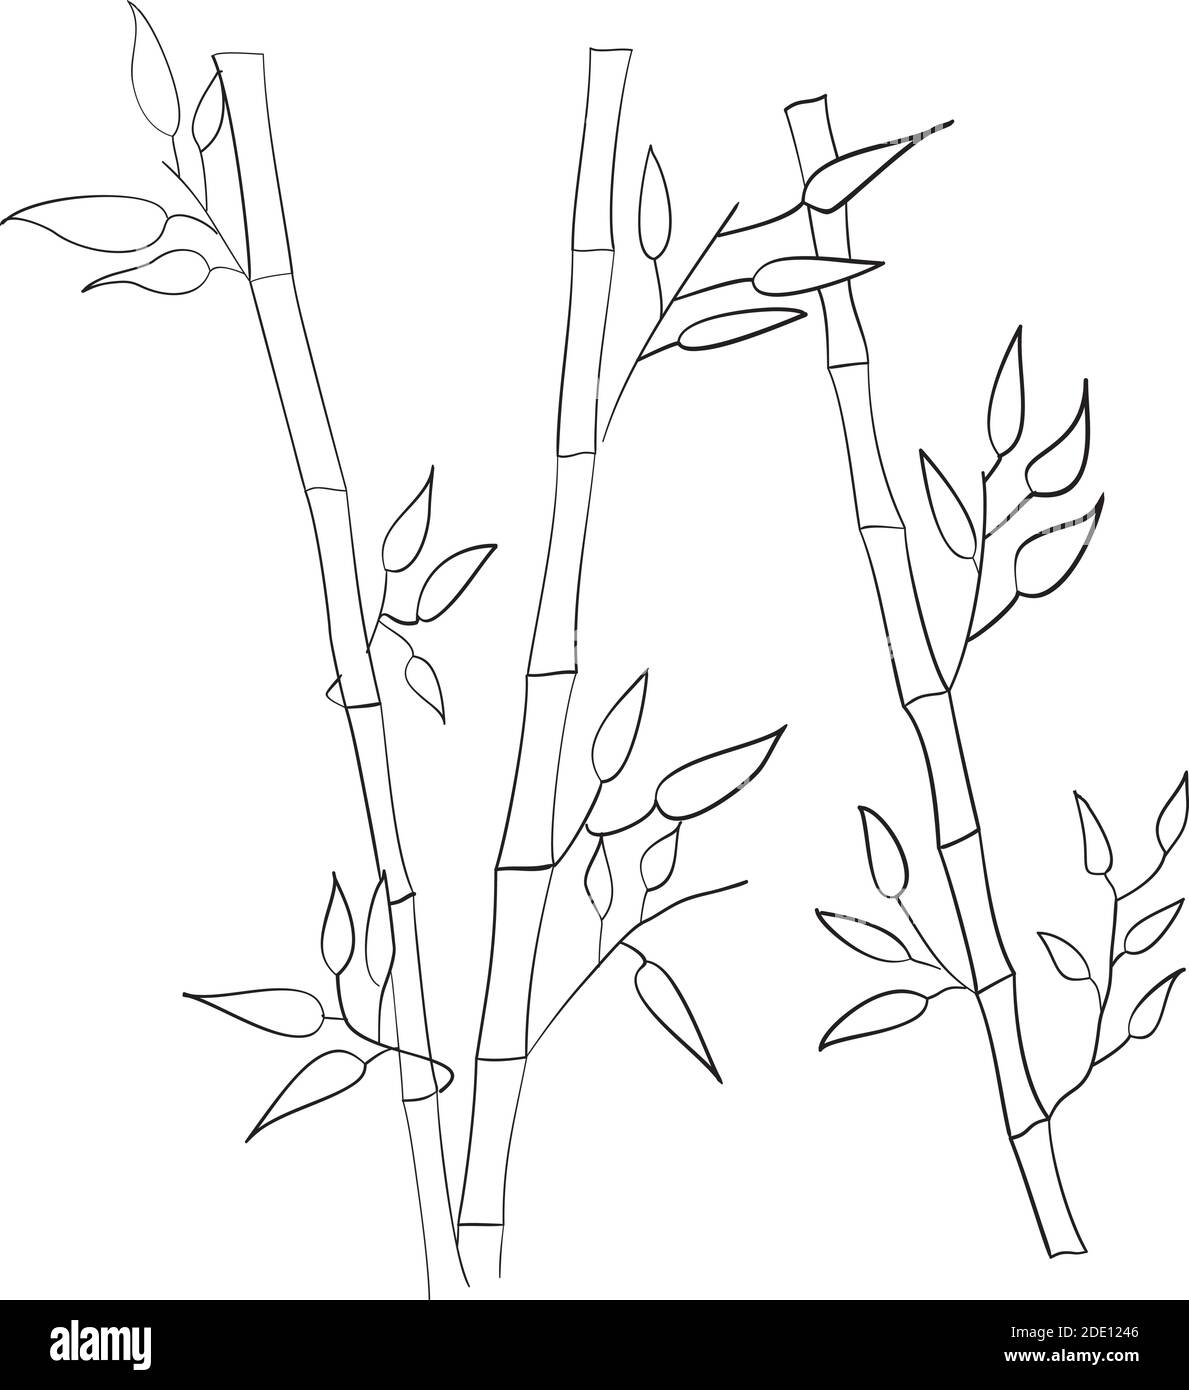 Handbemalte dekorative Bambus-Stämme mit Blättern auf weißem Hintergrund - Vektor-Illustration. Stock Vektor